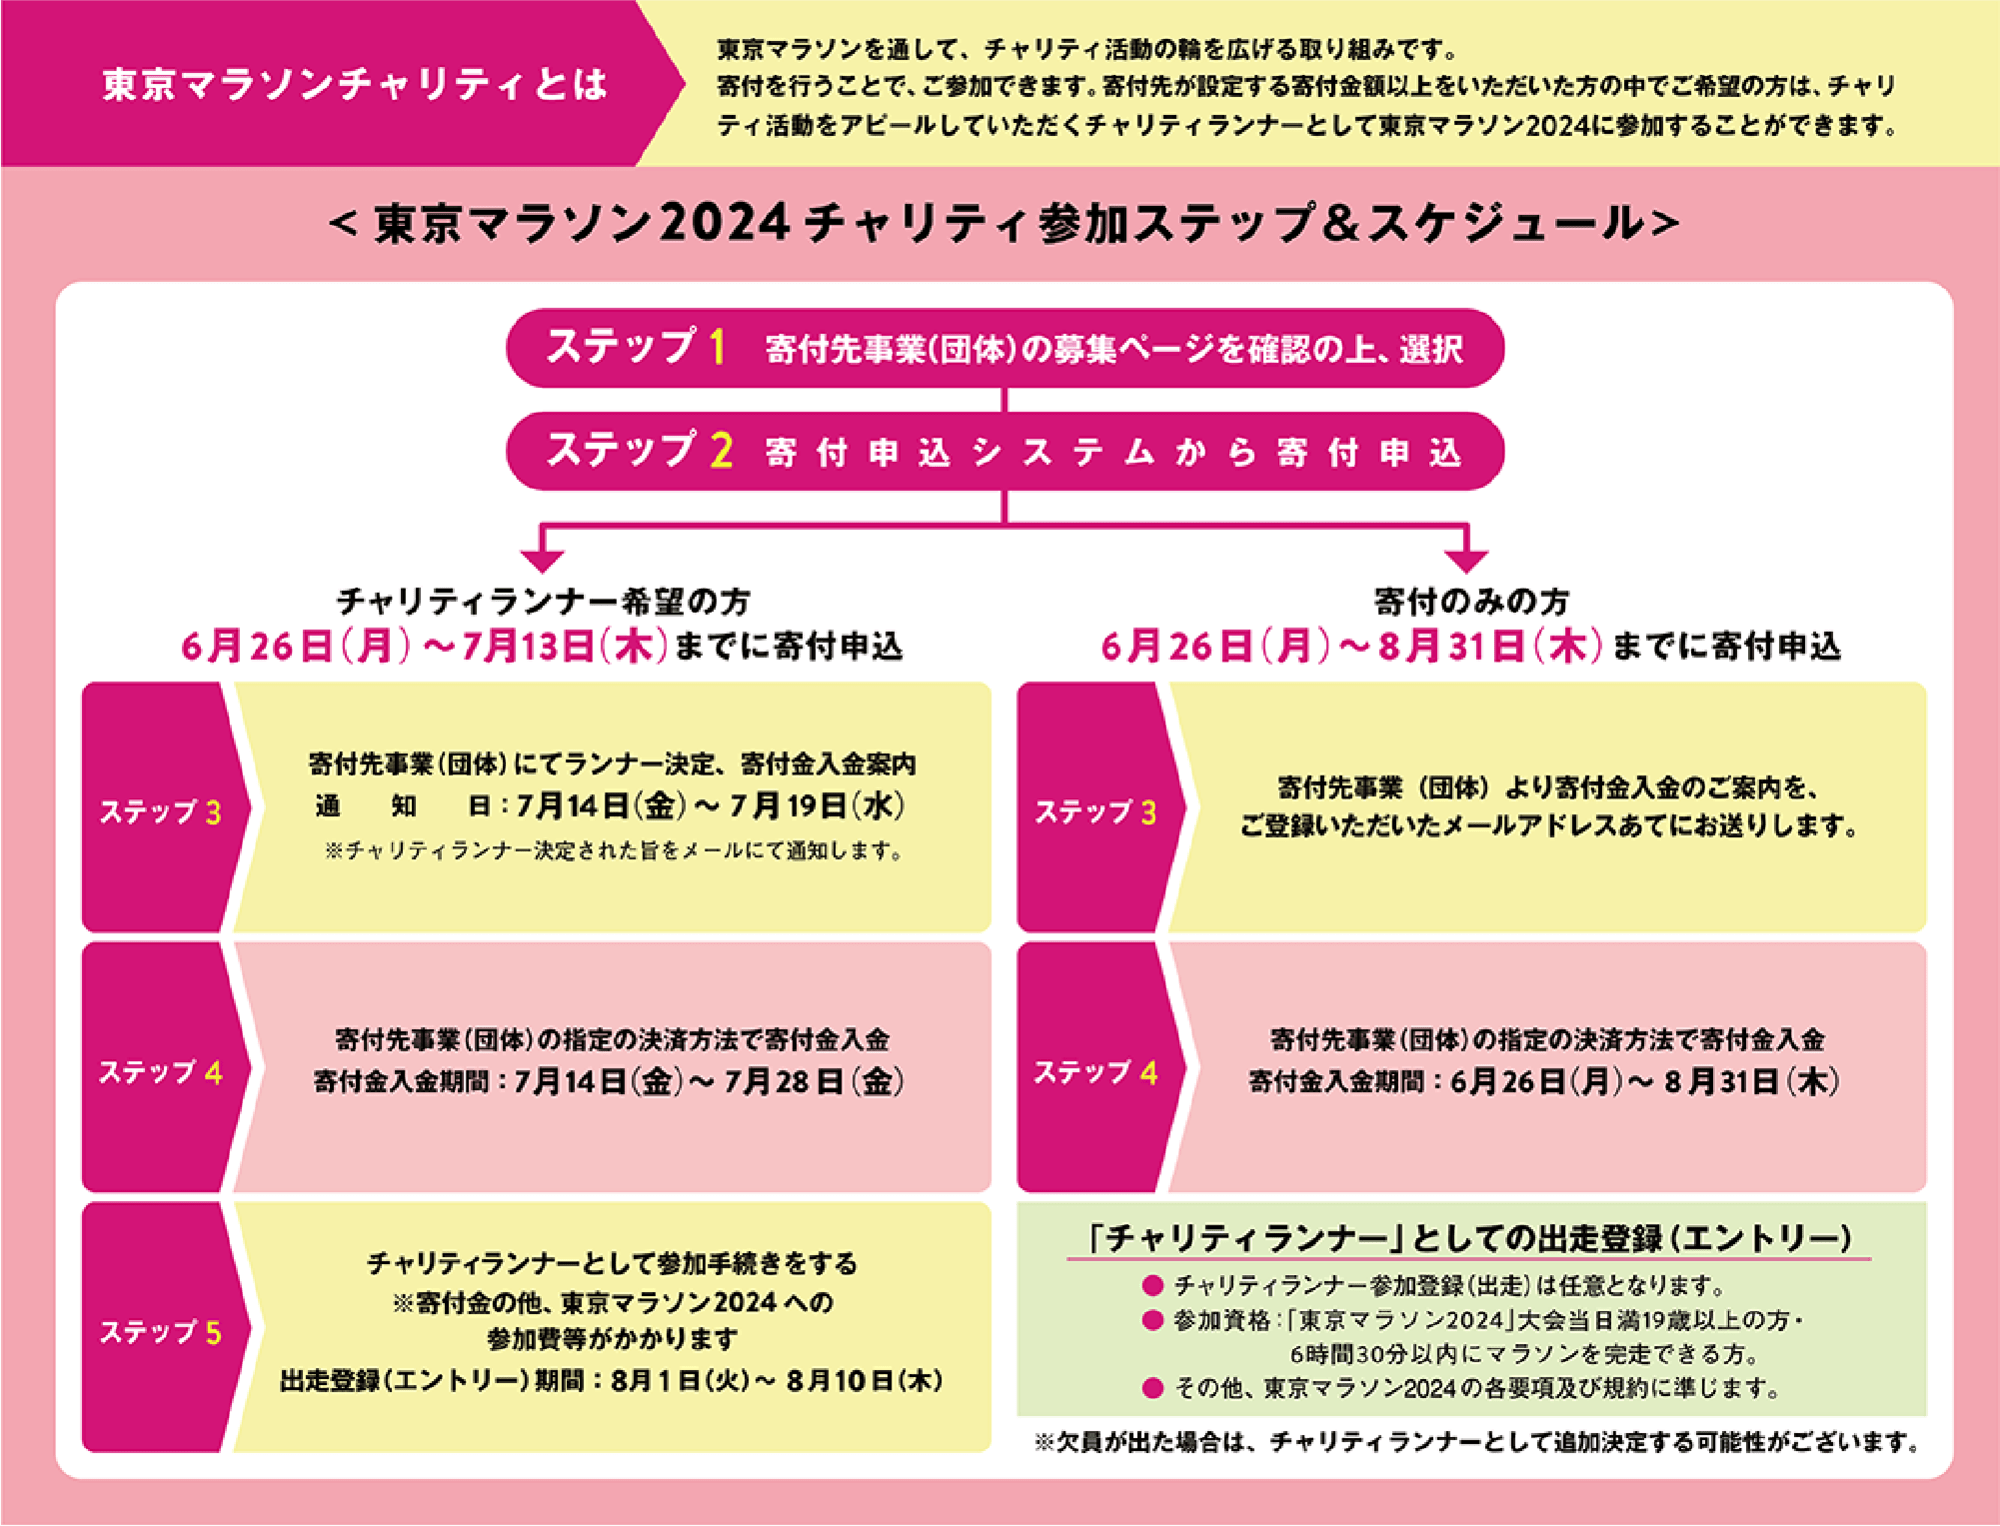 schedule_jp.png